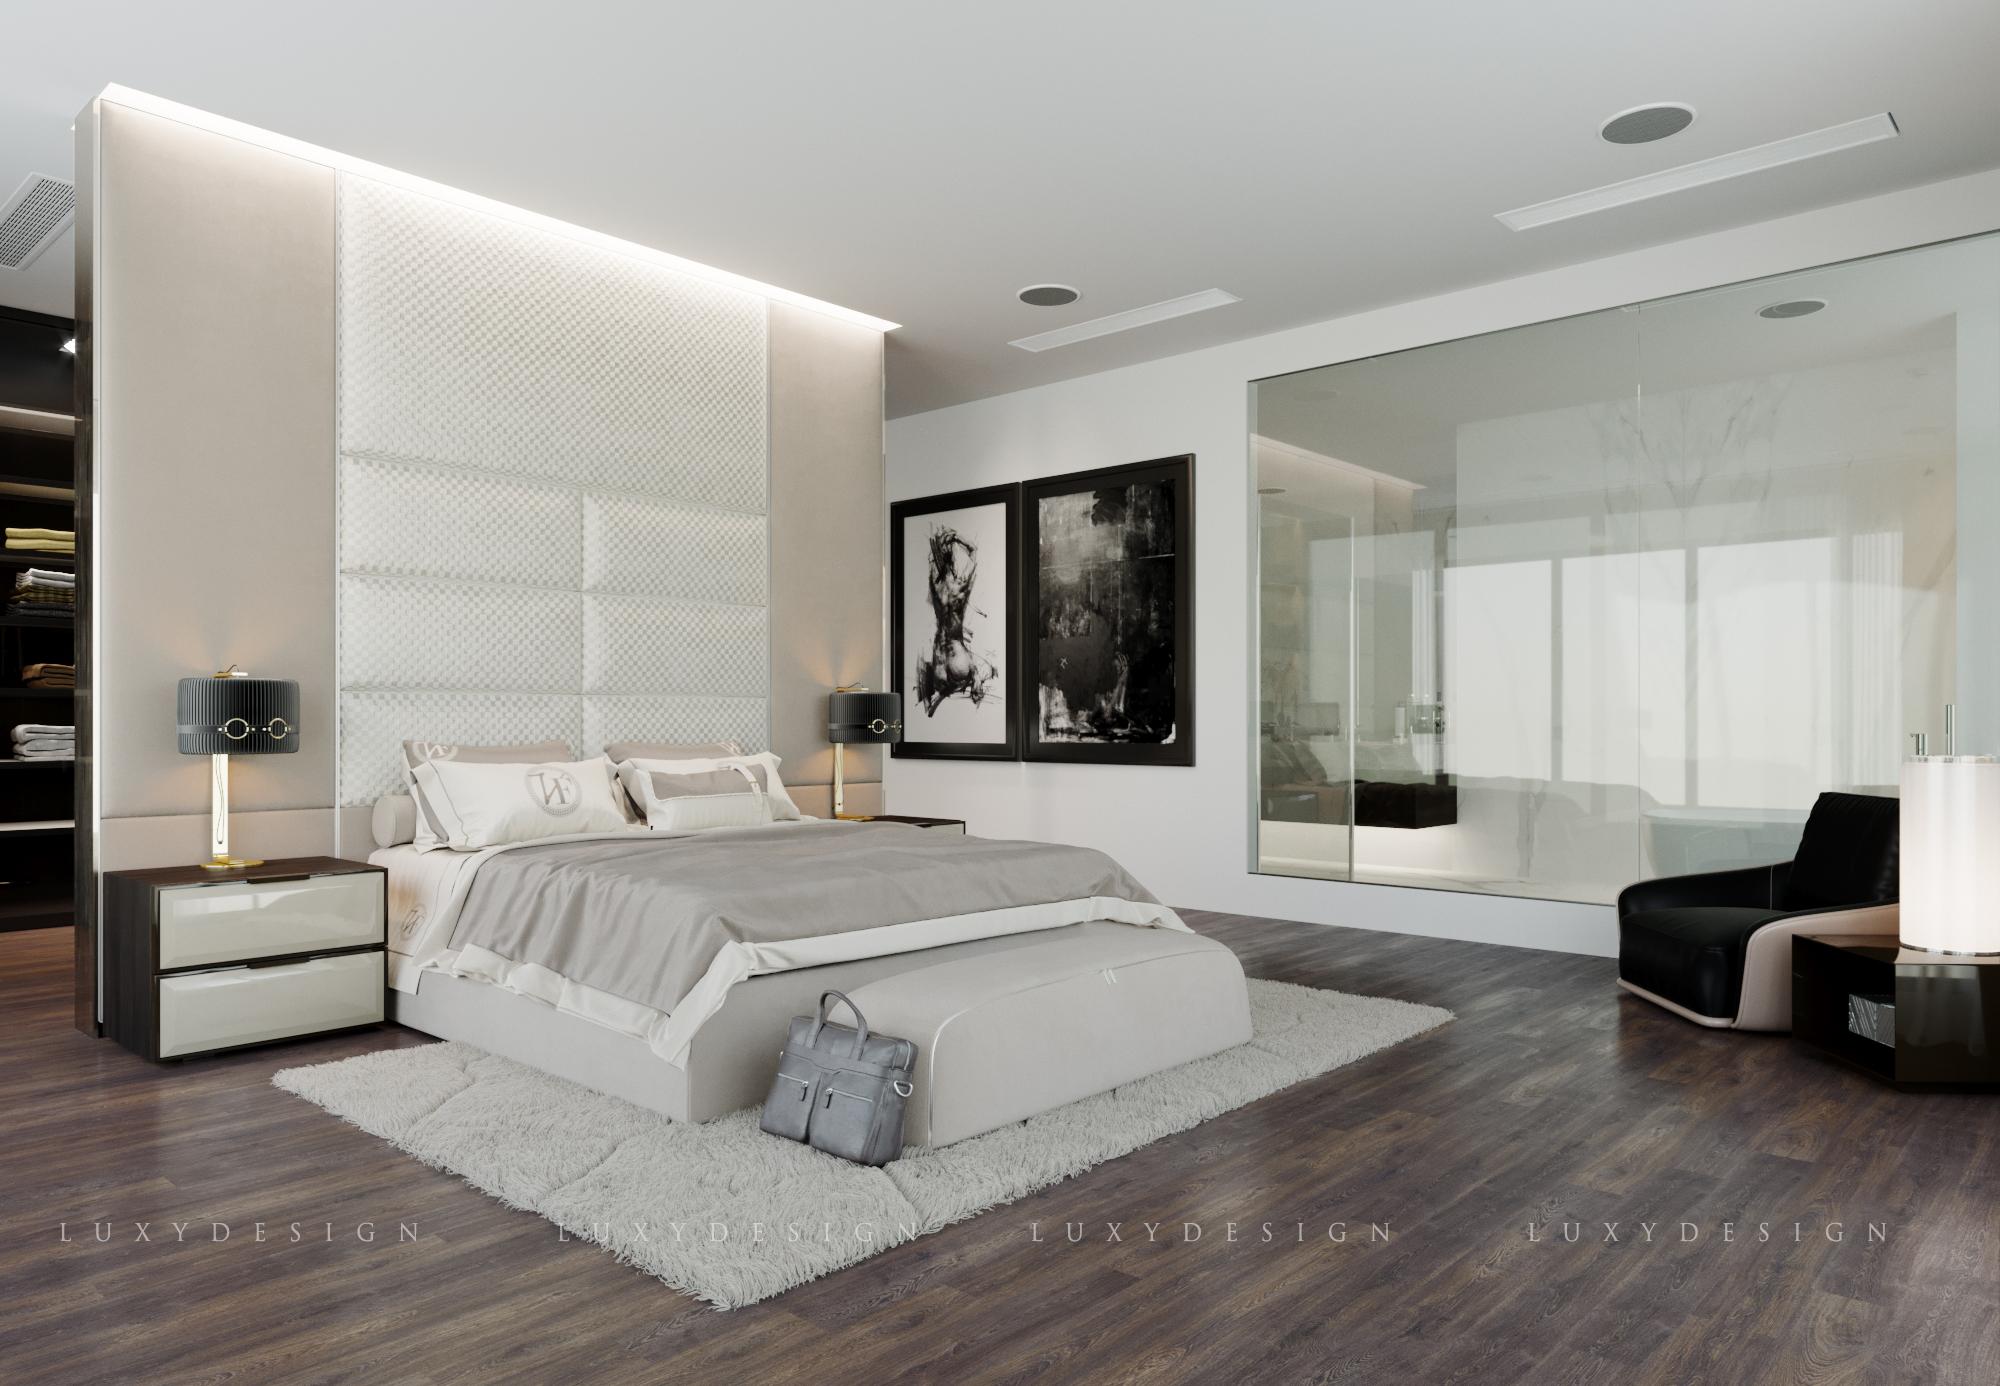 Phòng ngủ cũng được tối đa không gian bằng gam màu trắng pha thêm các màu sắc của vật dụng